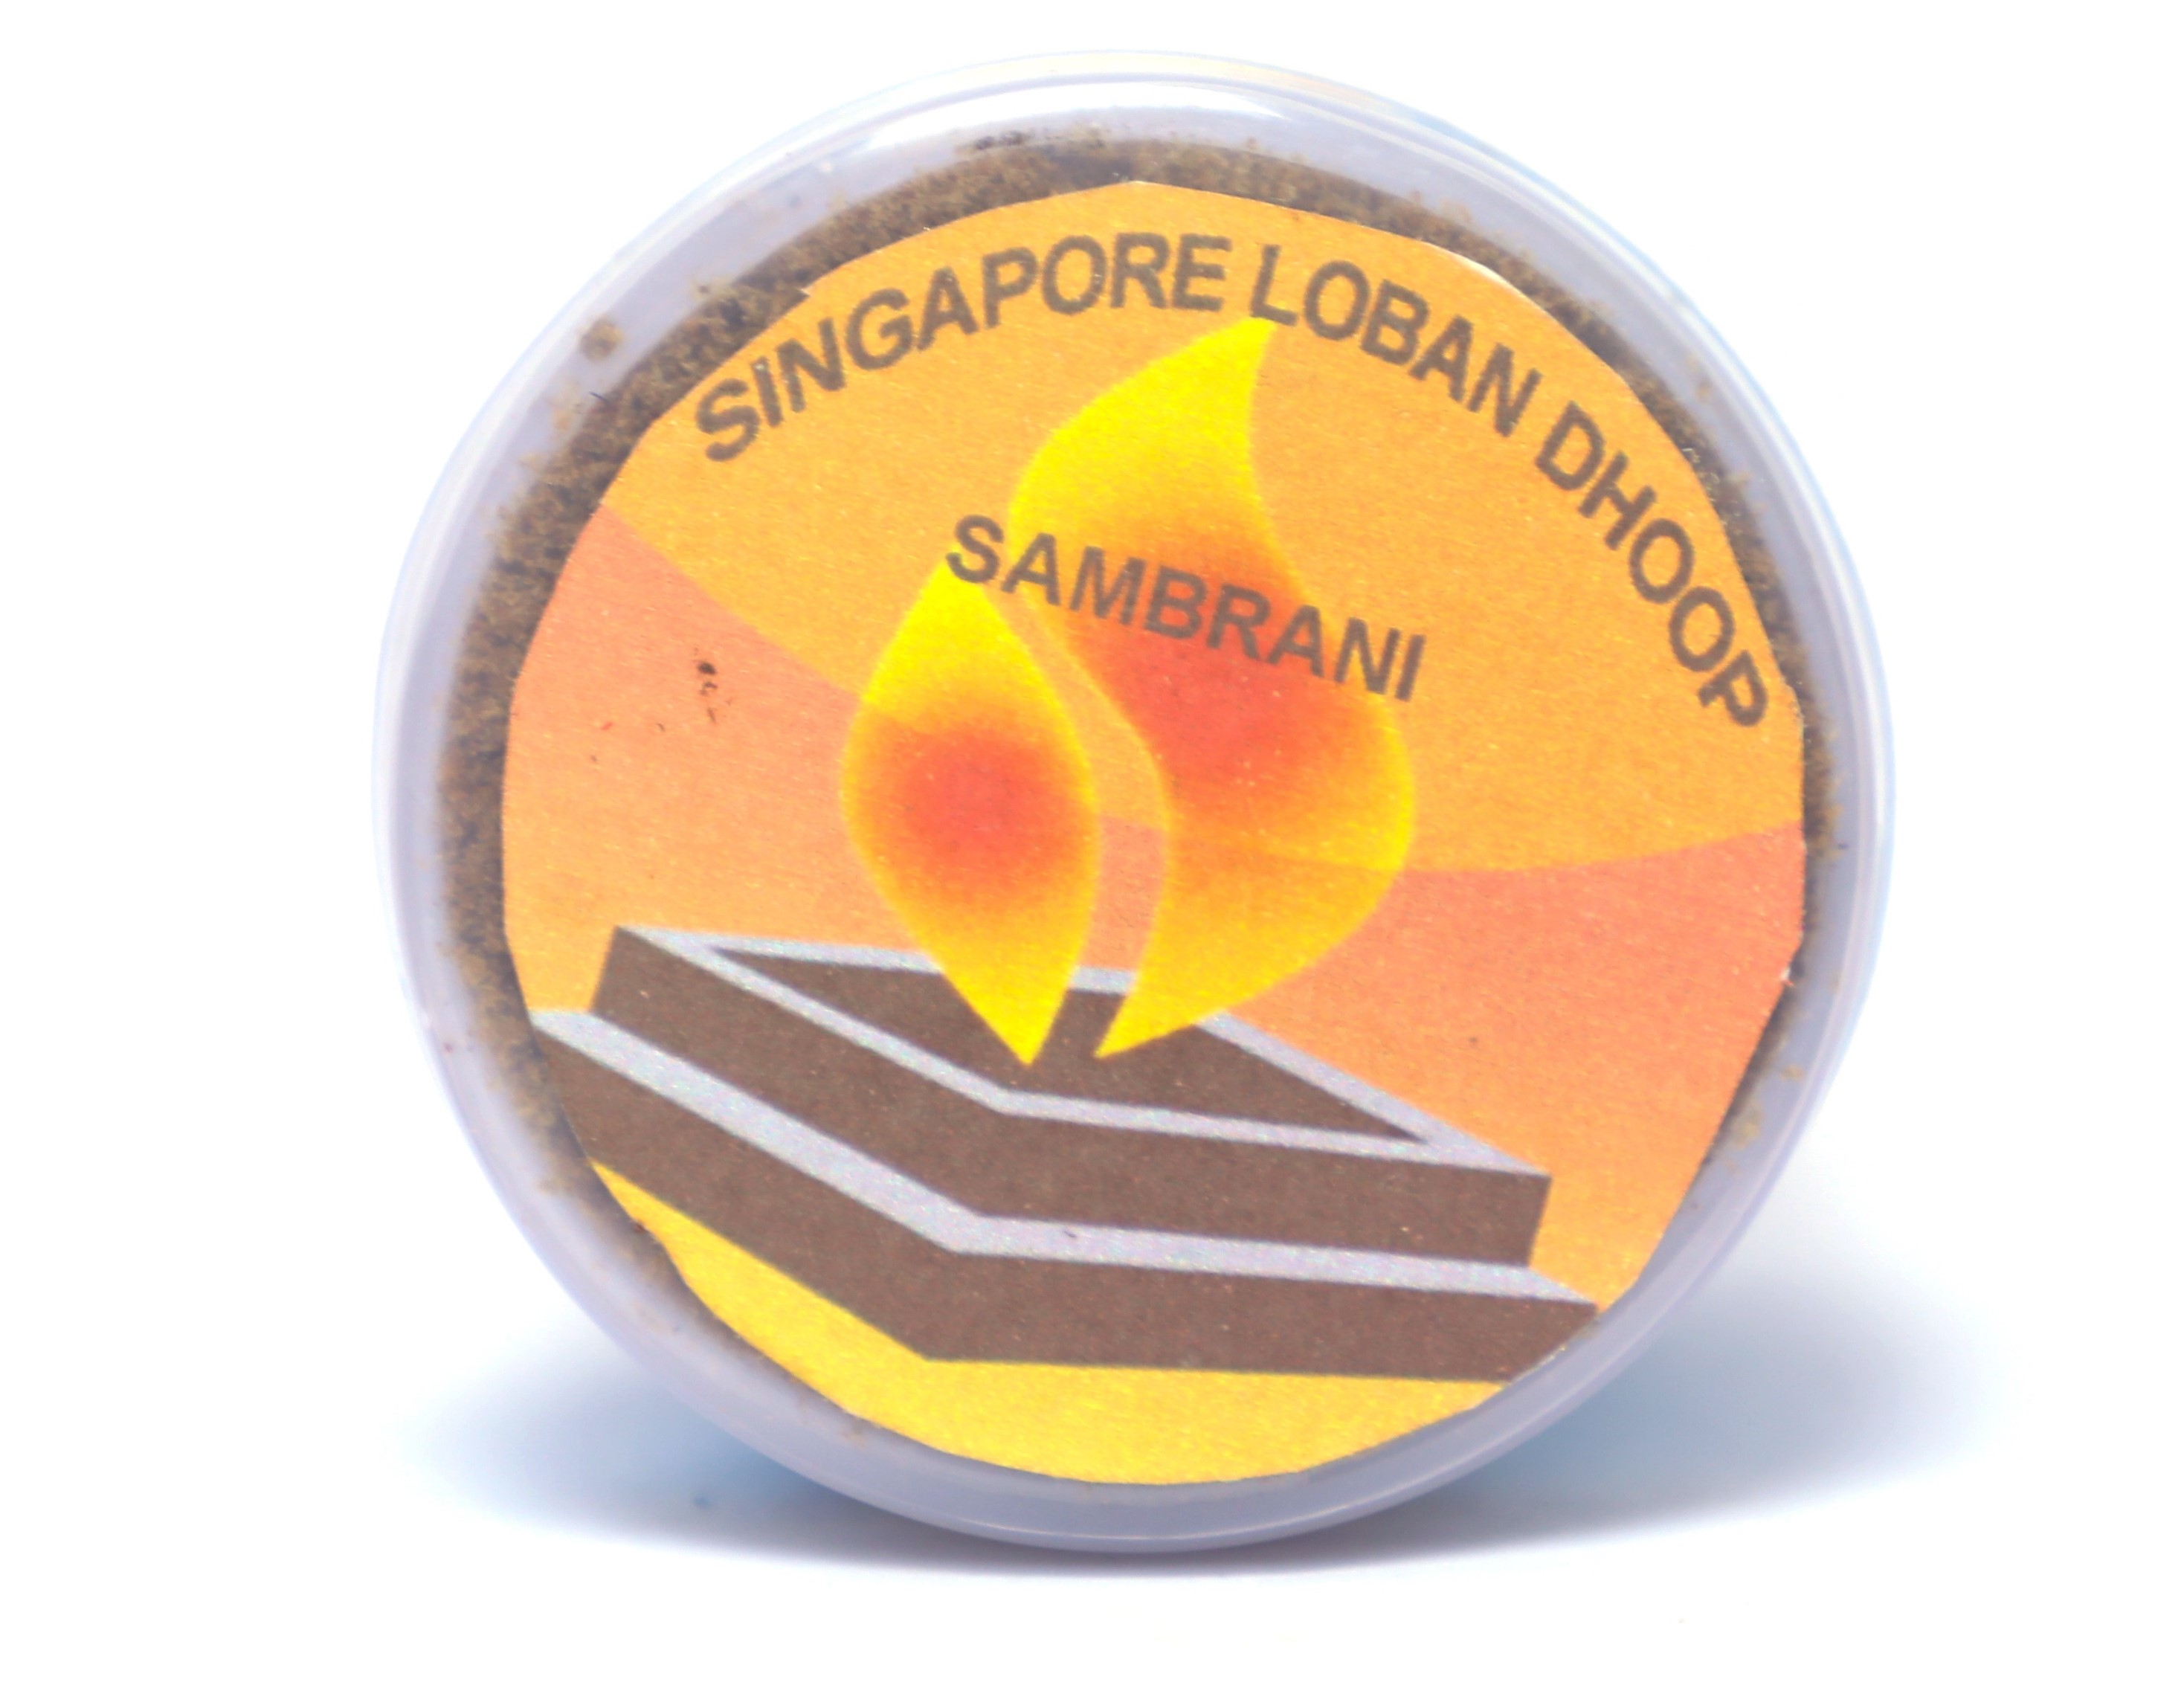  Singapore Loban Dhoop Pack of 50 Grams